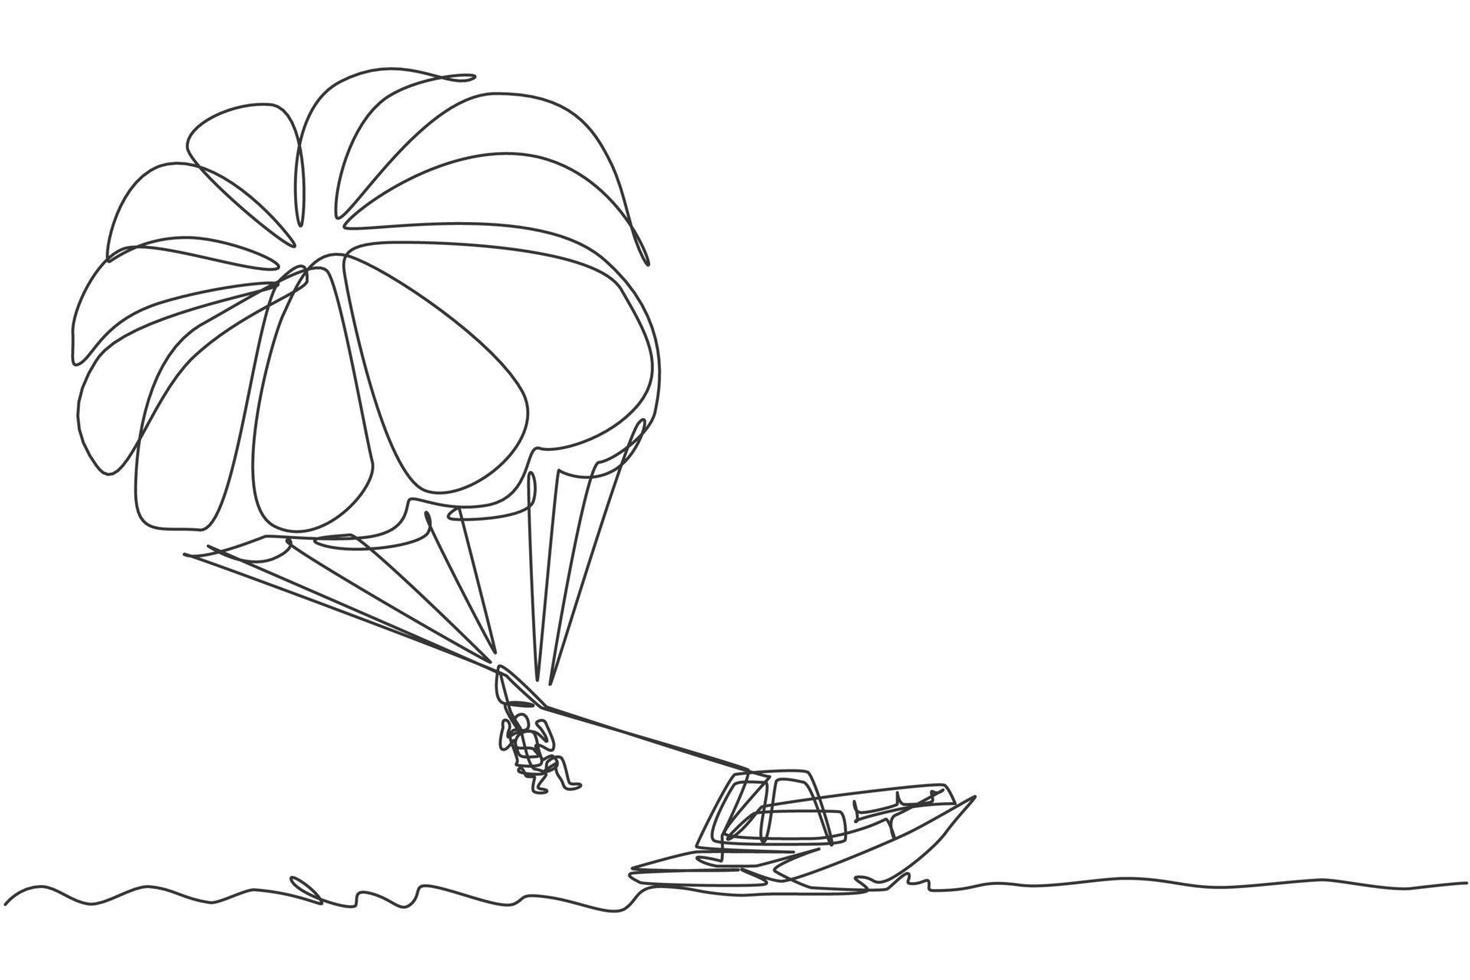 un dessin continu de jeune bravoure volant dans le ciel à l'aide d'un parachute ascensionnel derrière le bateau. concept de sport extrême dangereux en plein air. illustration vectorielle de dessin dynamique à une seule ligne vecteur